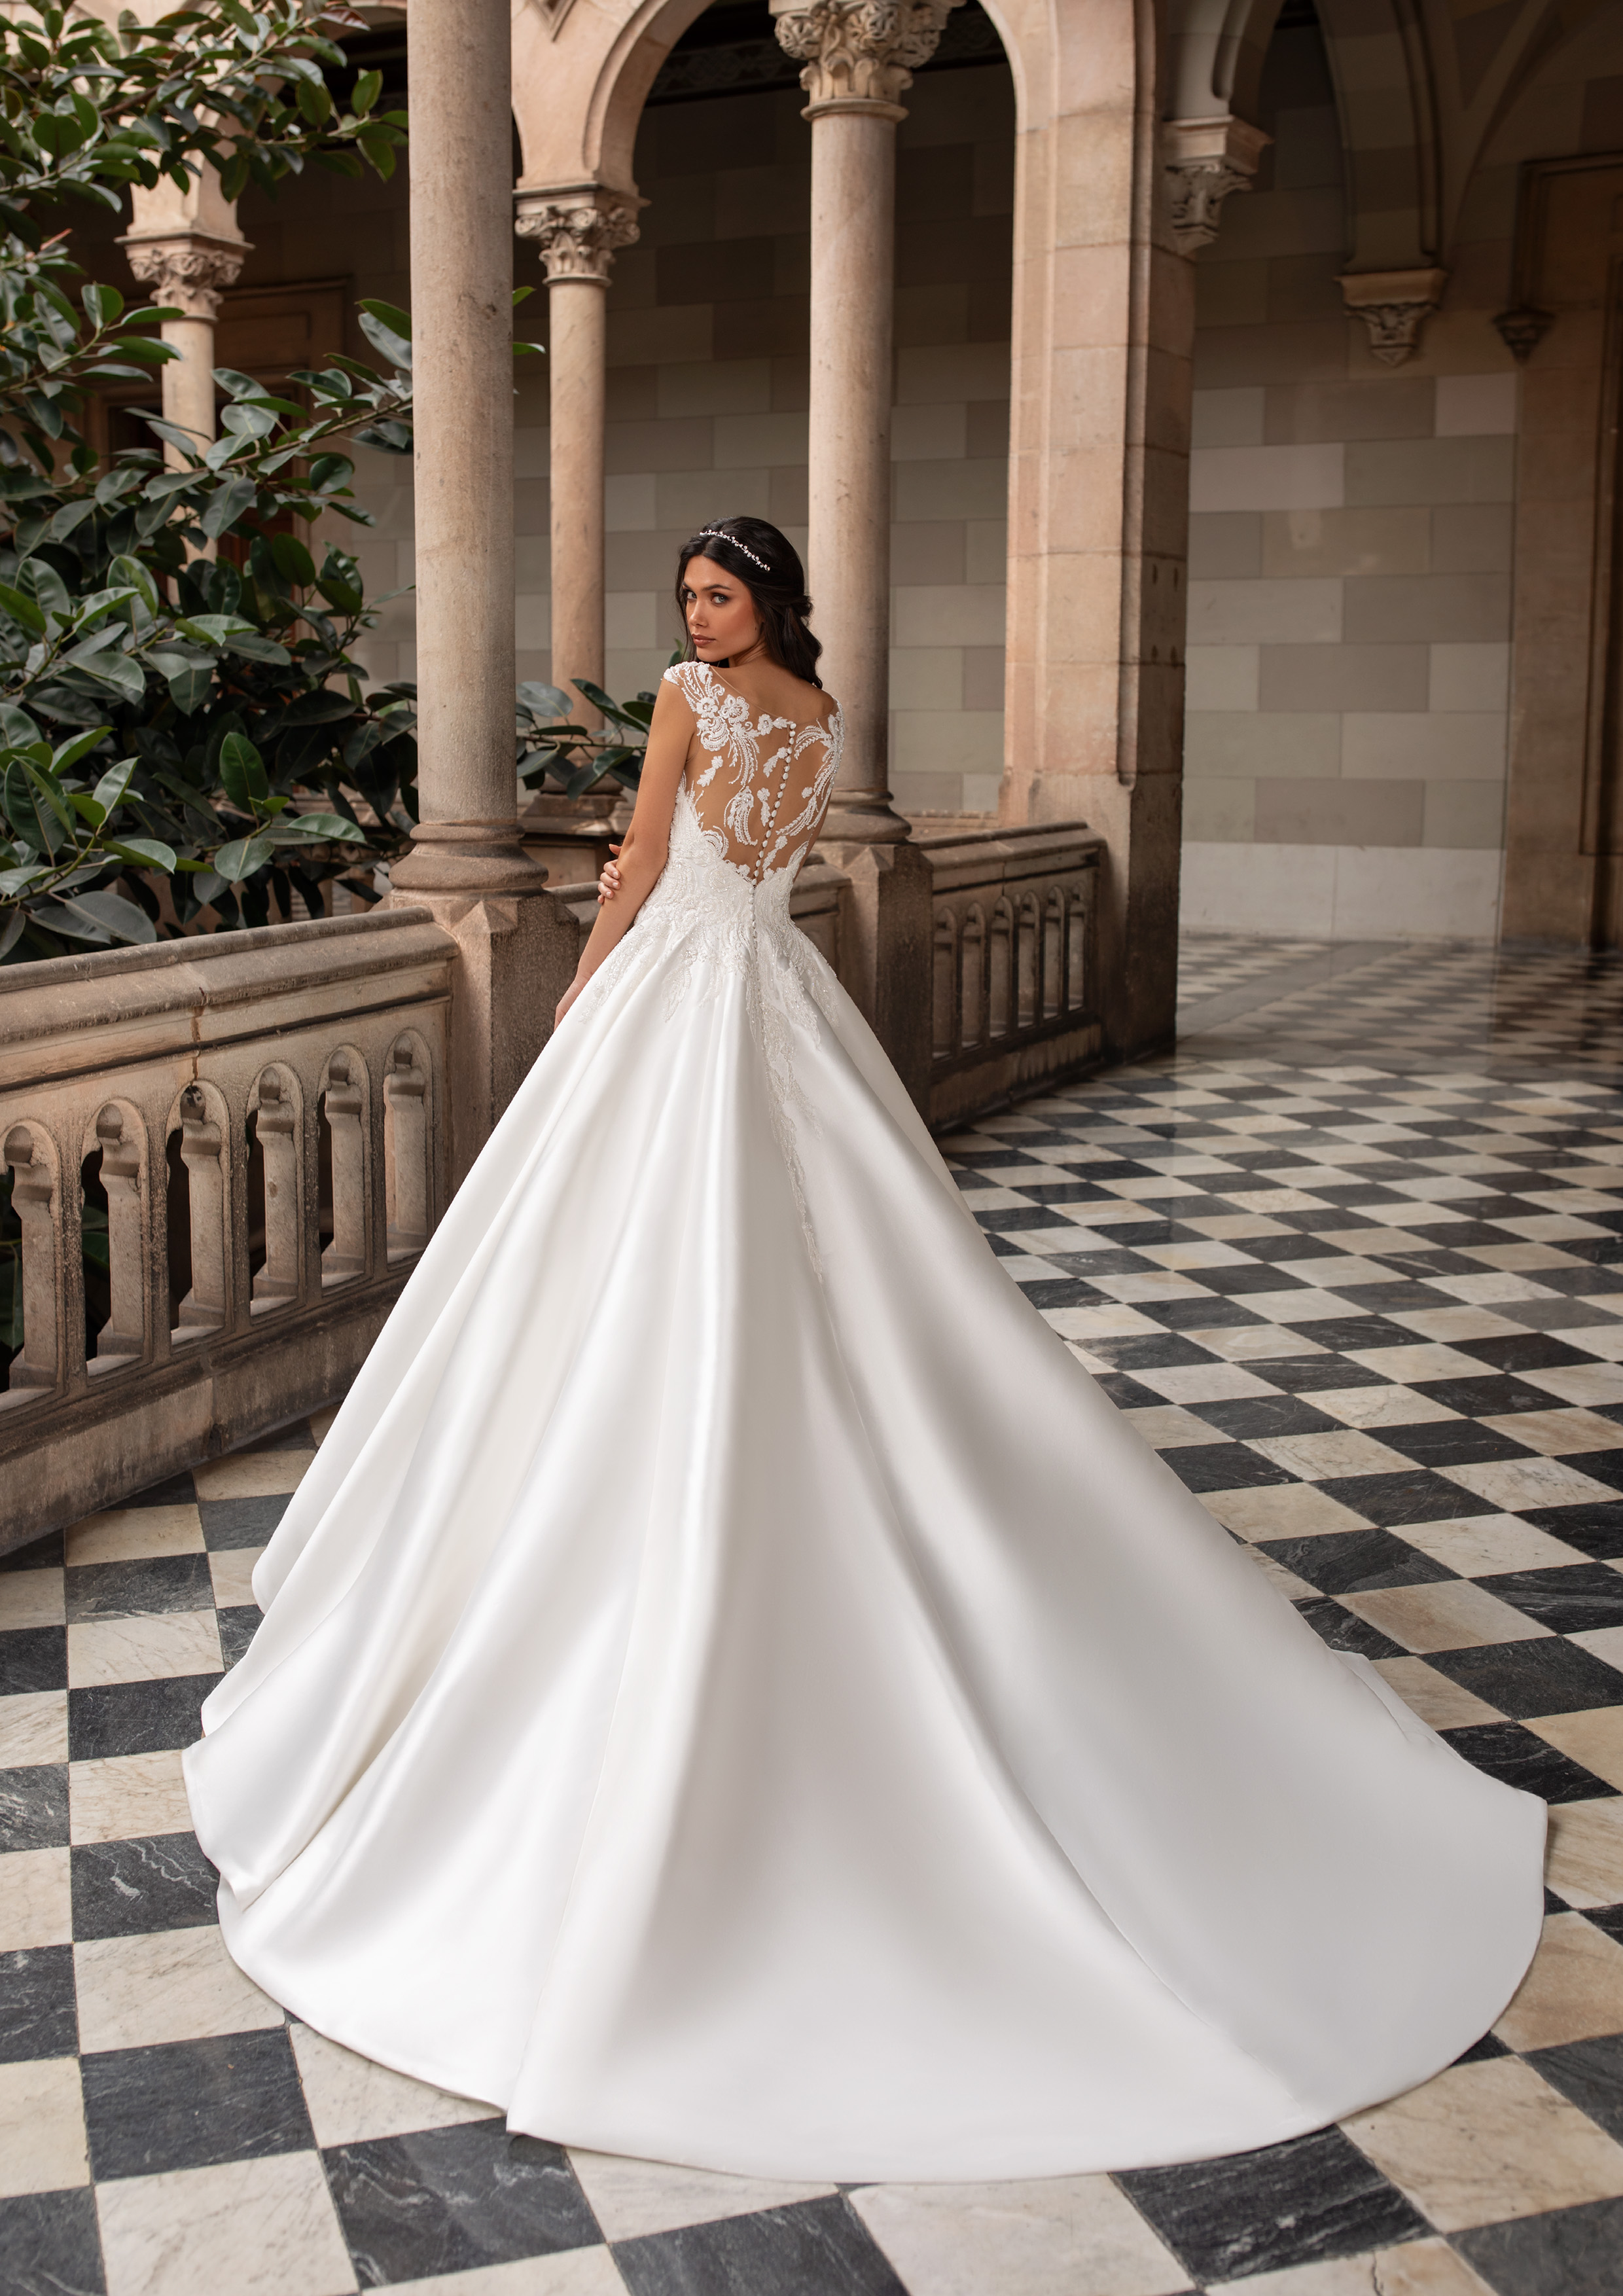 Vestido de noiva modelo Duke da coleção Pronovias 2021 Cruise Collection